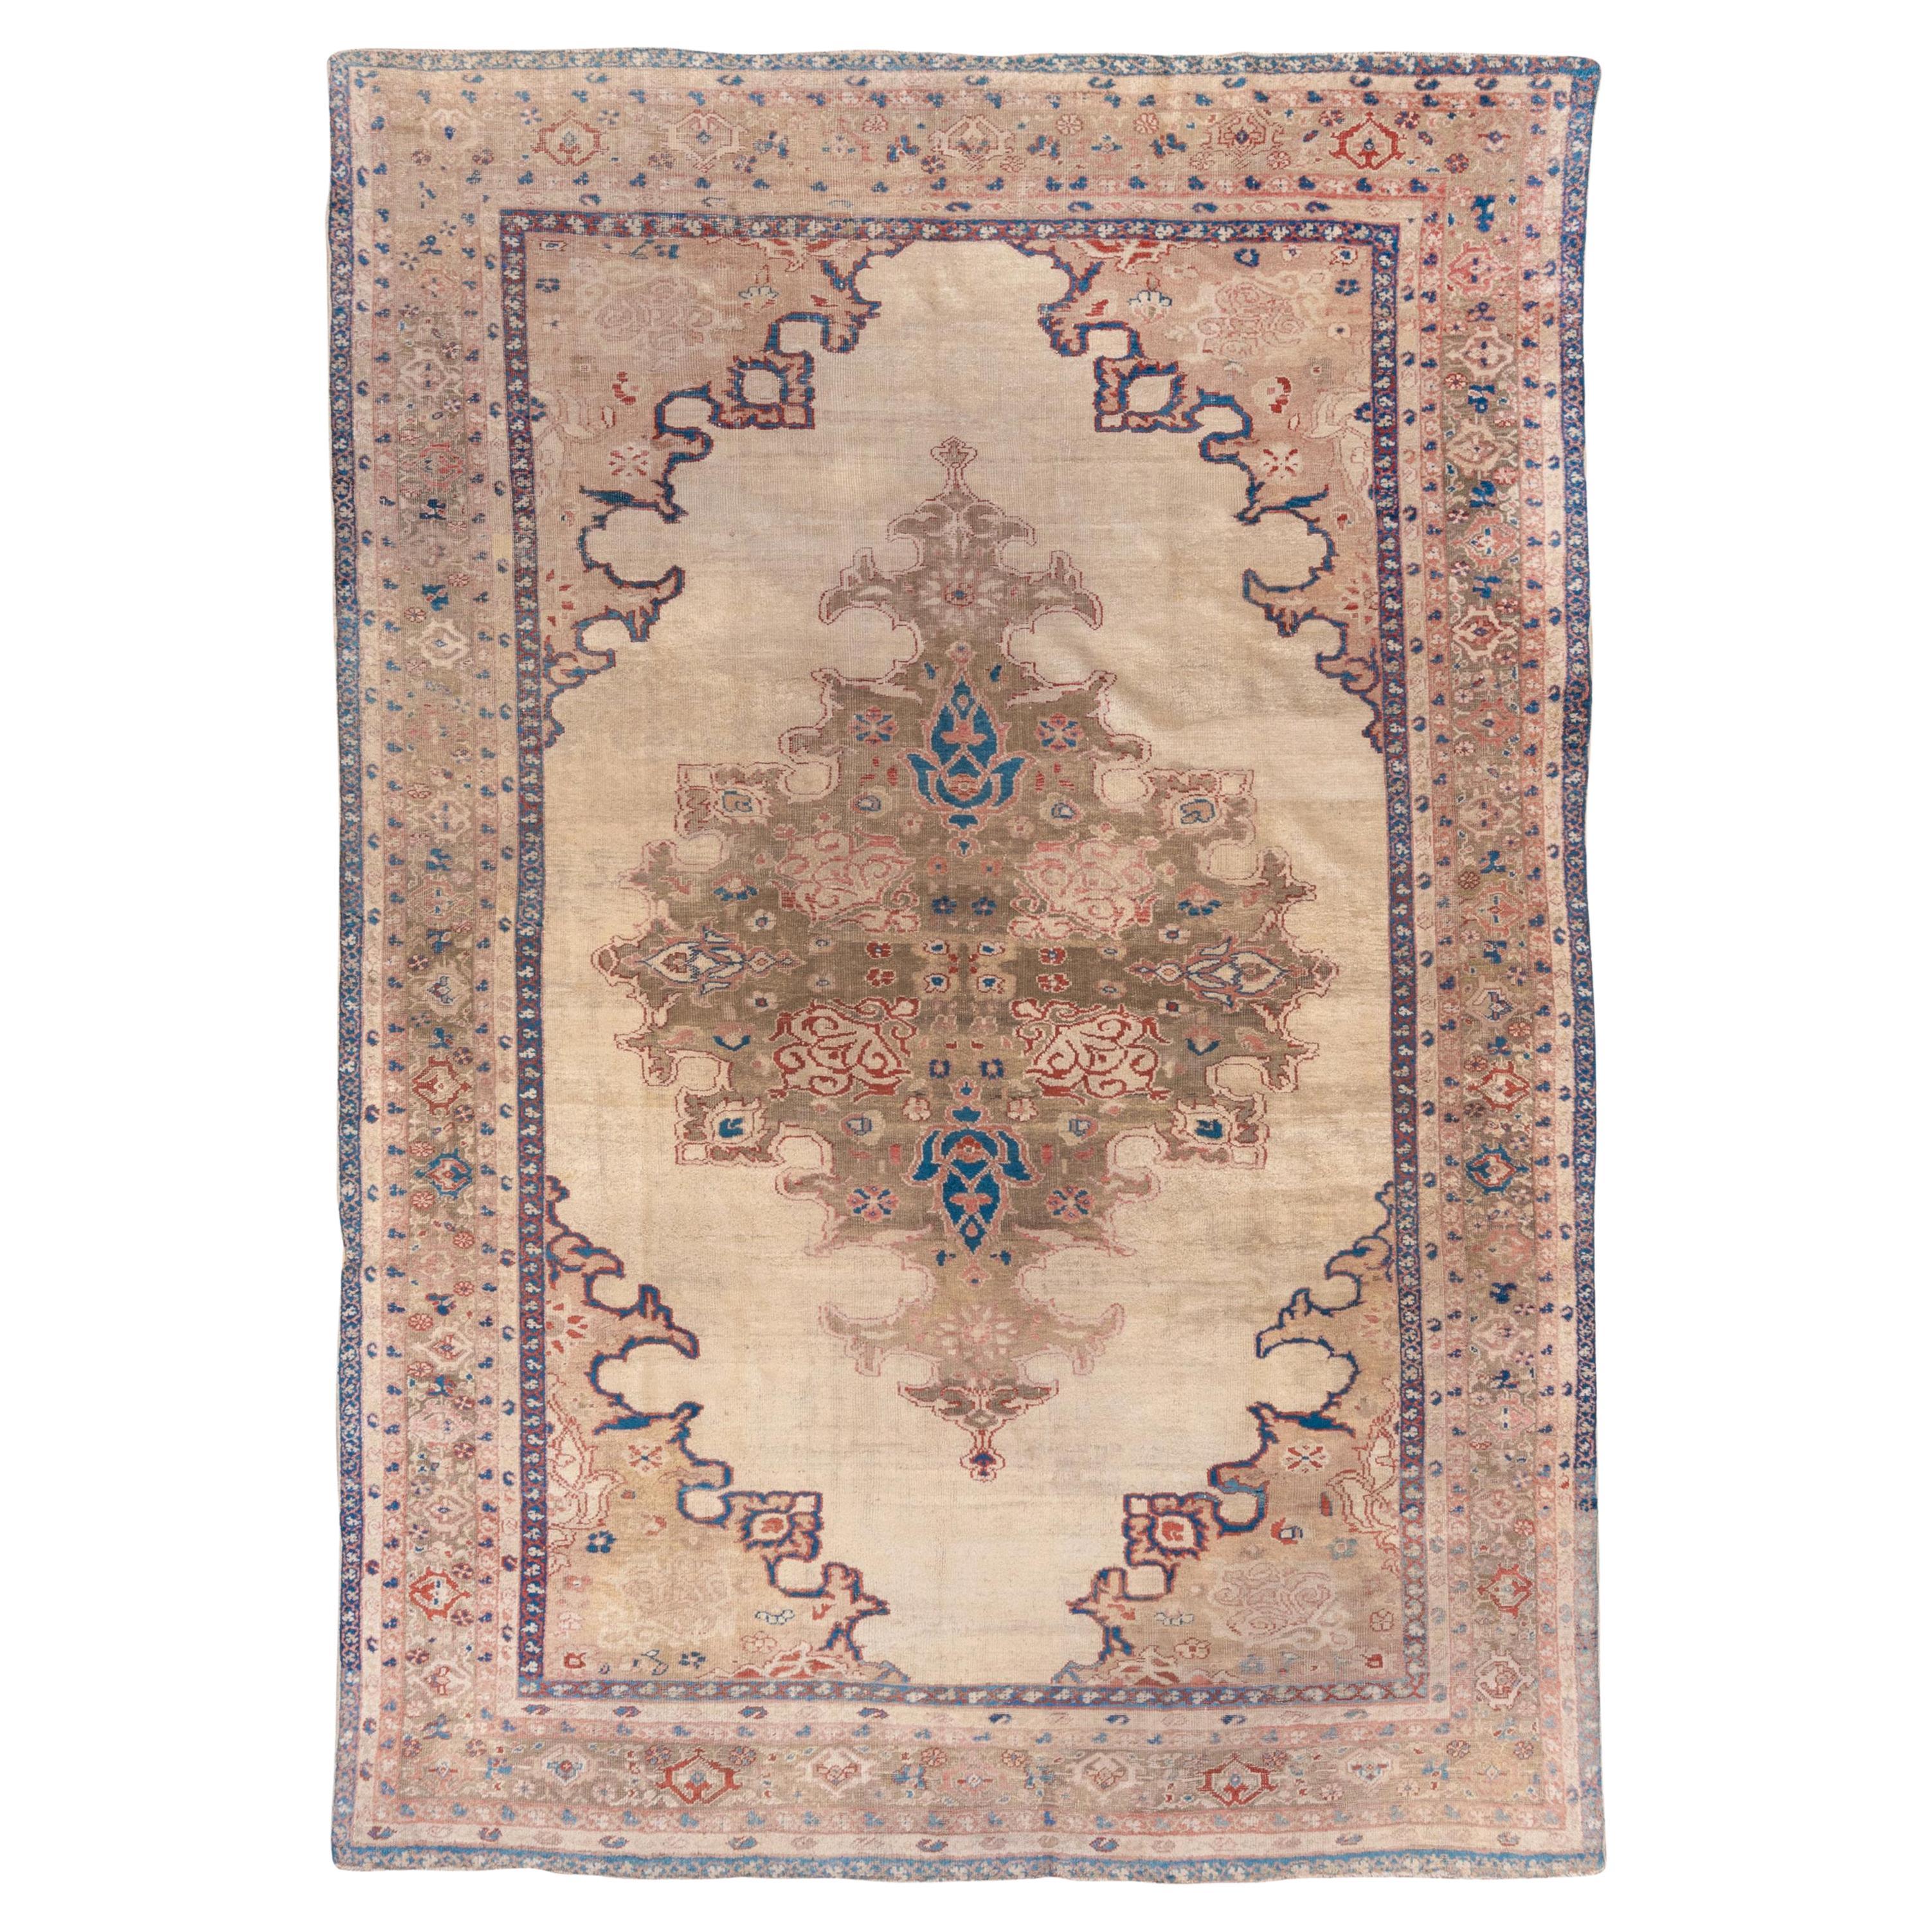 Magnifique tapis persan ancien de Sultanabad, champ extérieur ivoire aux accents bleus